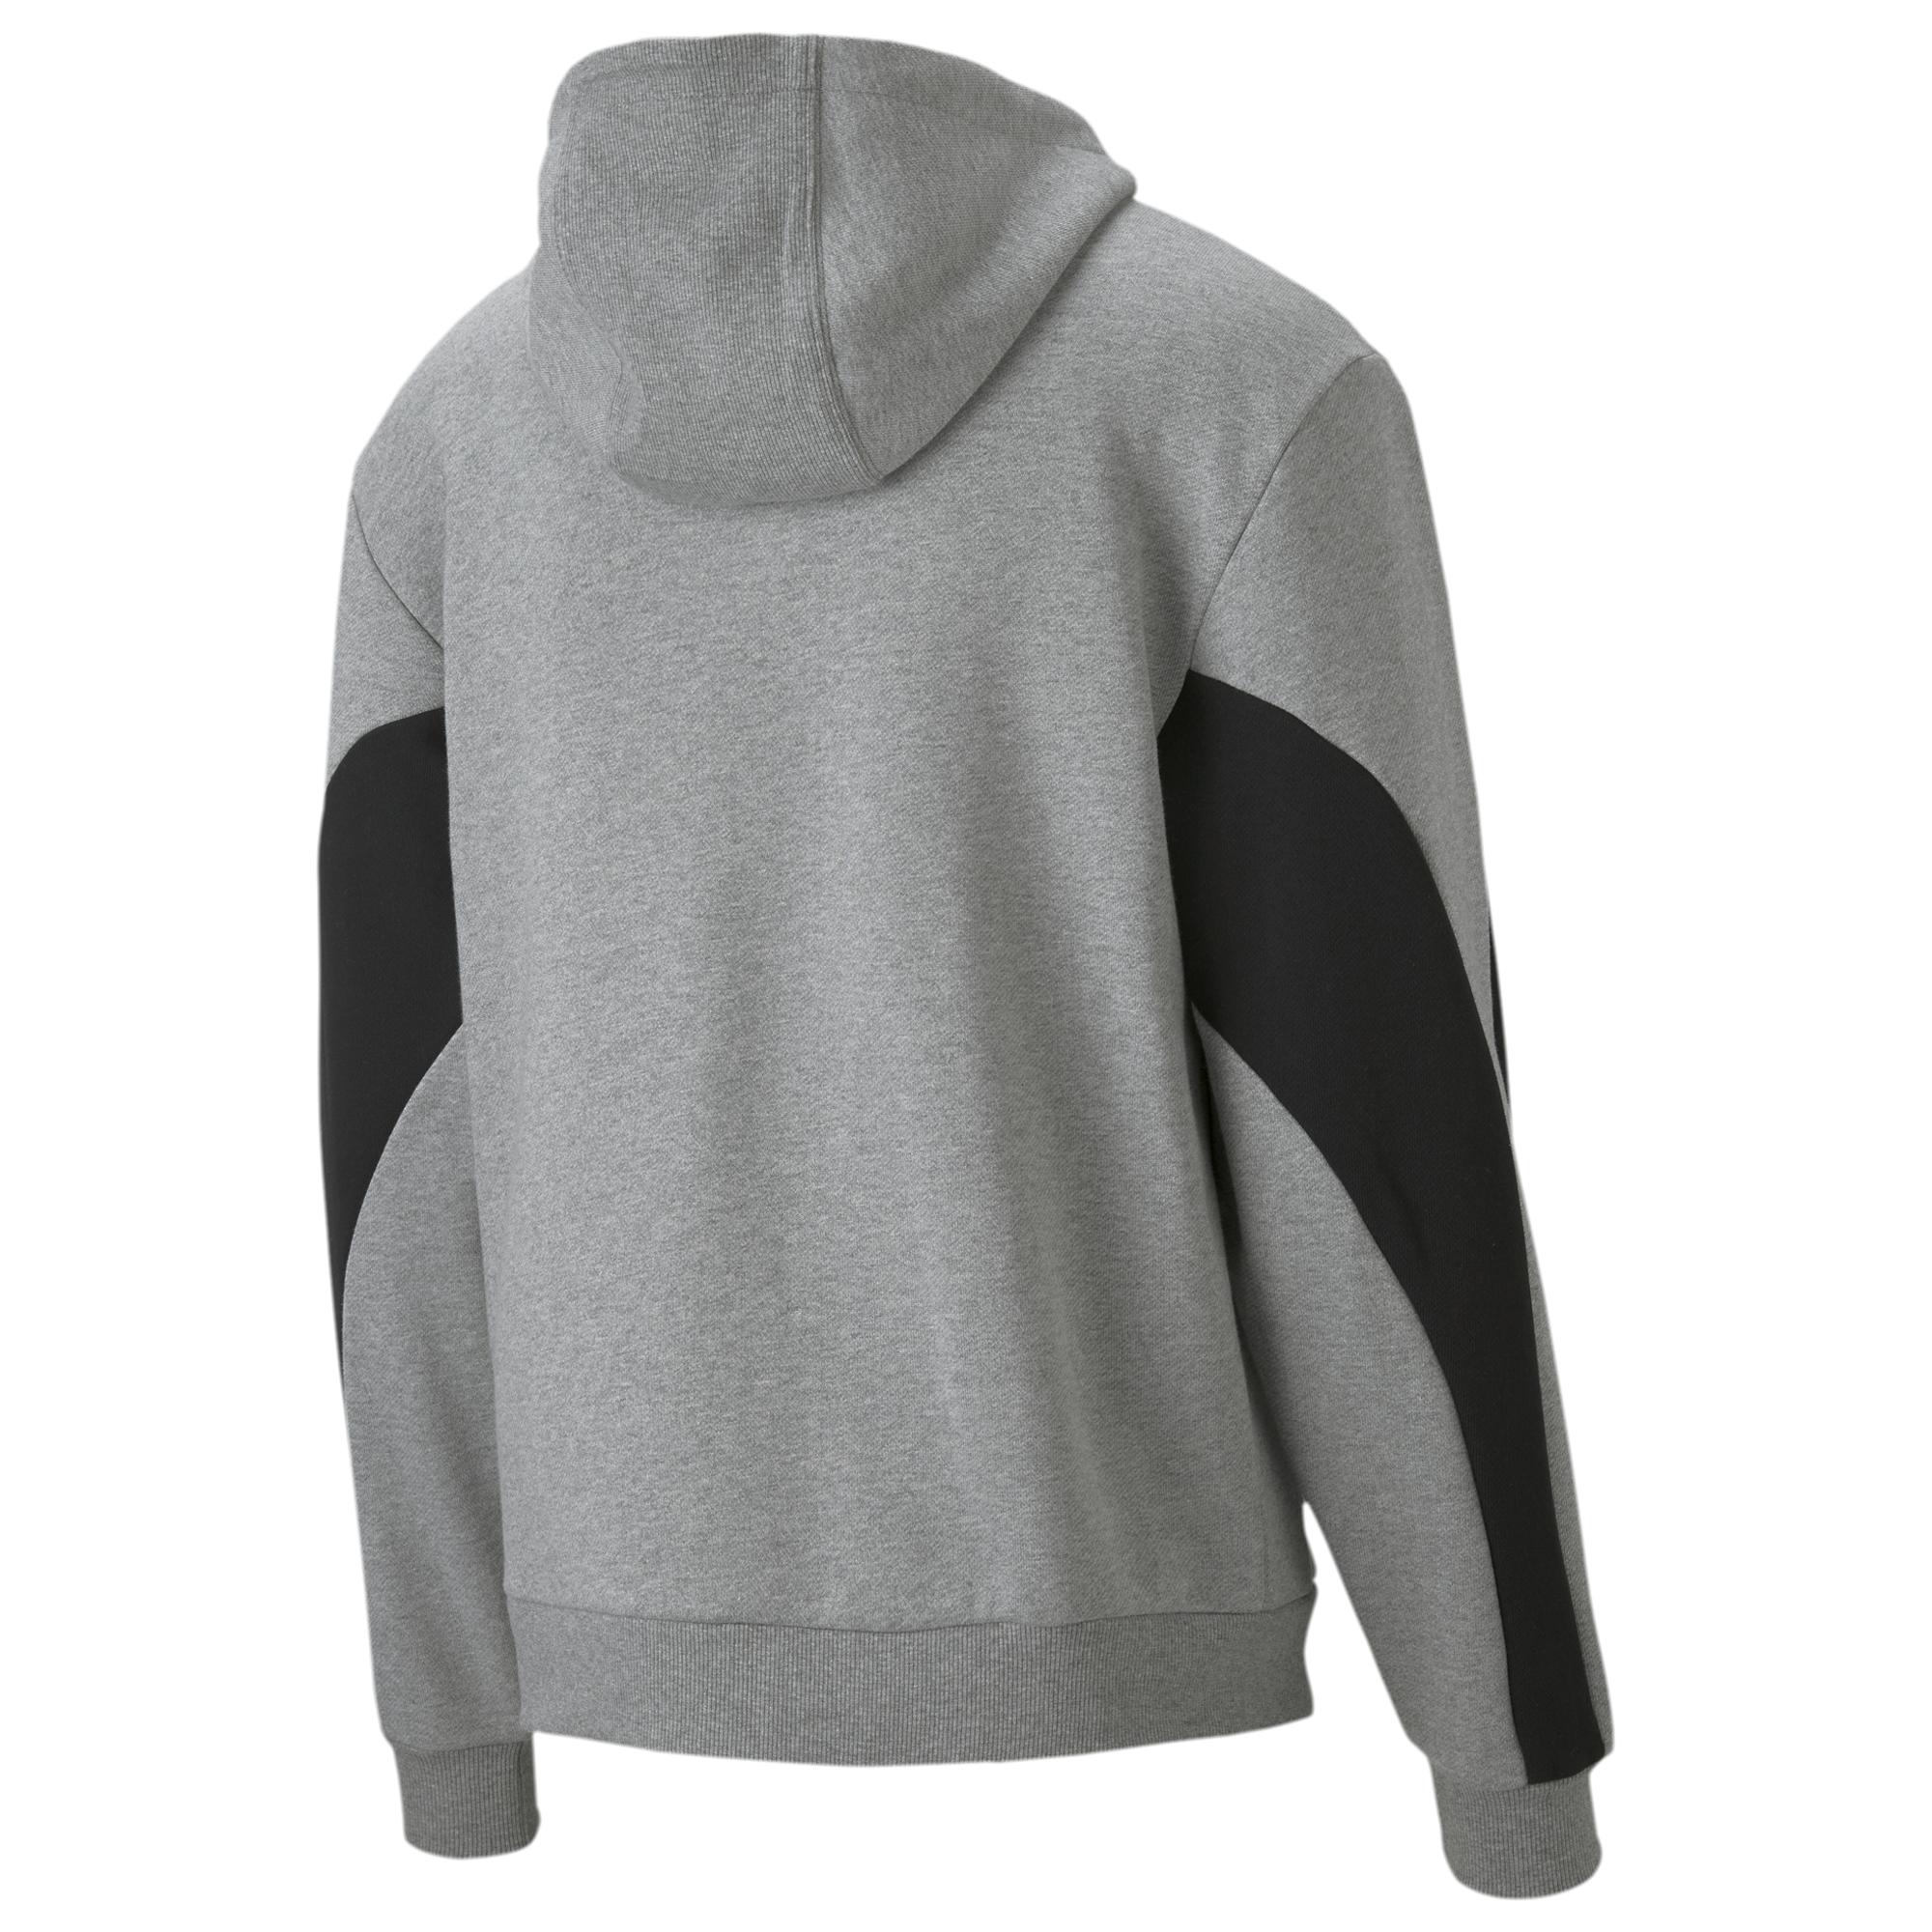 PUMA Fleece Winterized Hoodie in Grey/Black (Gray) for Men - Lyst